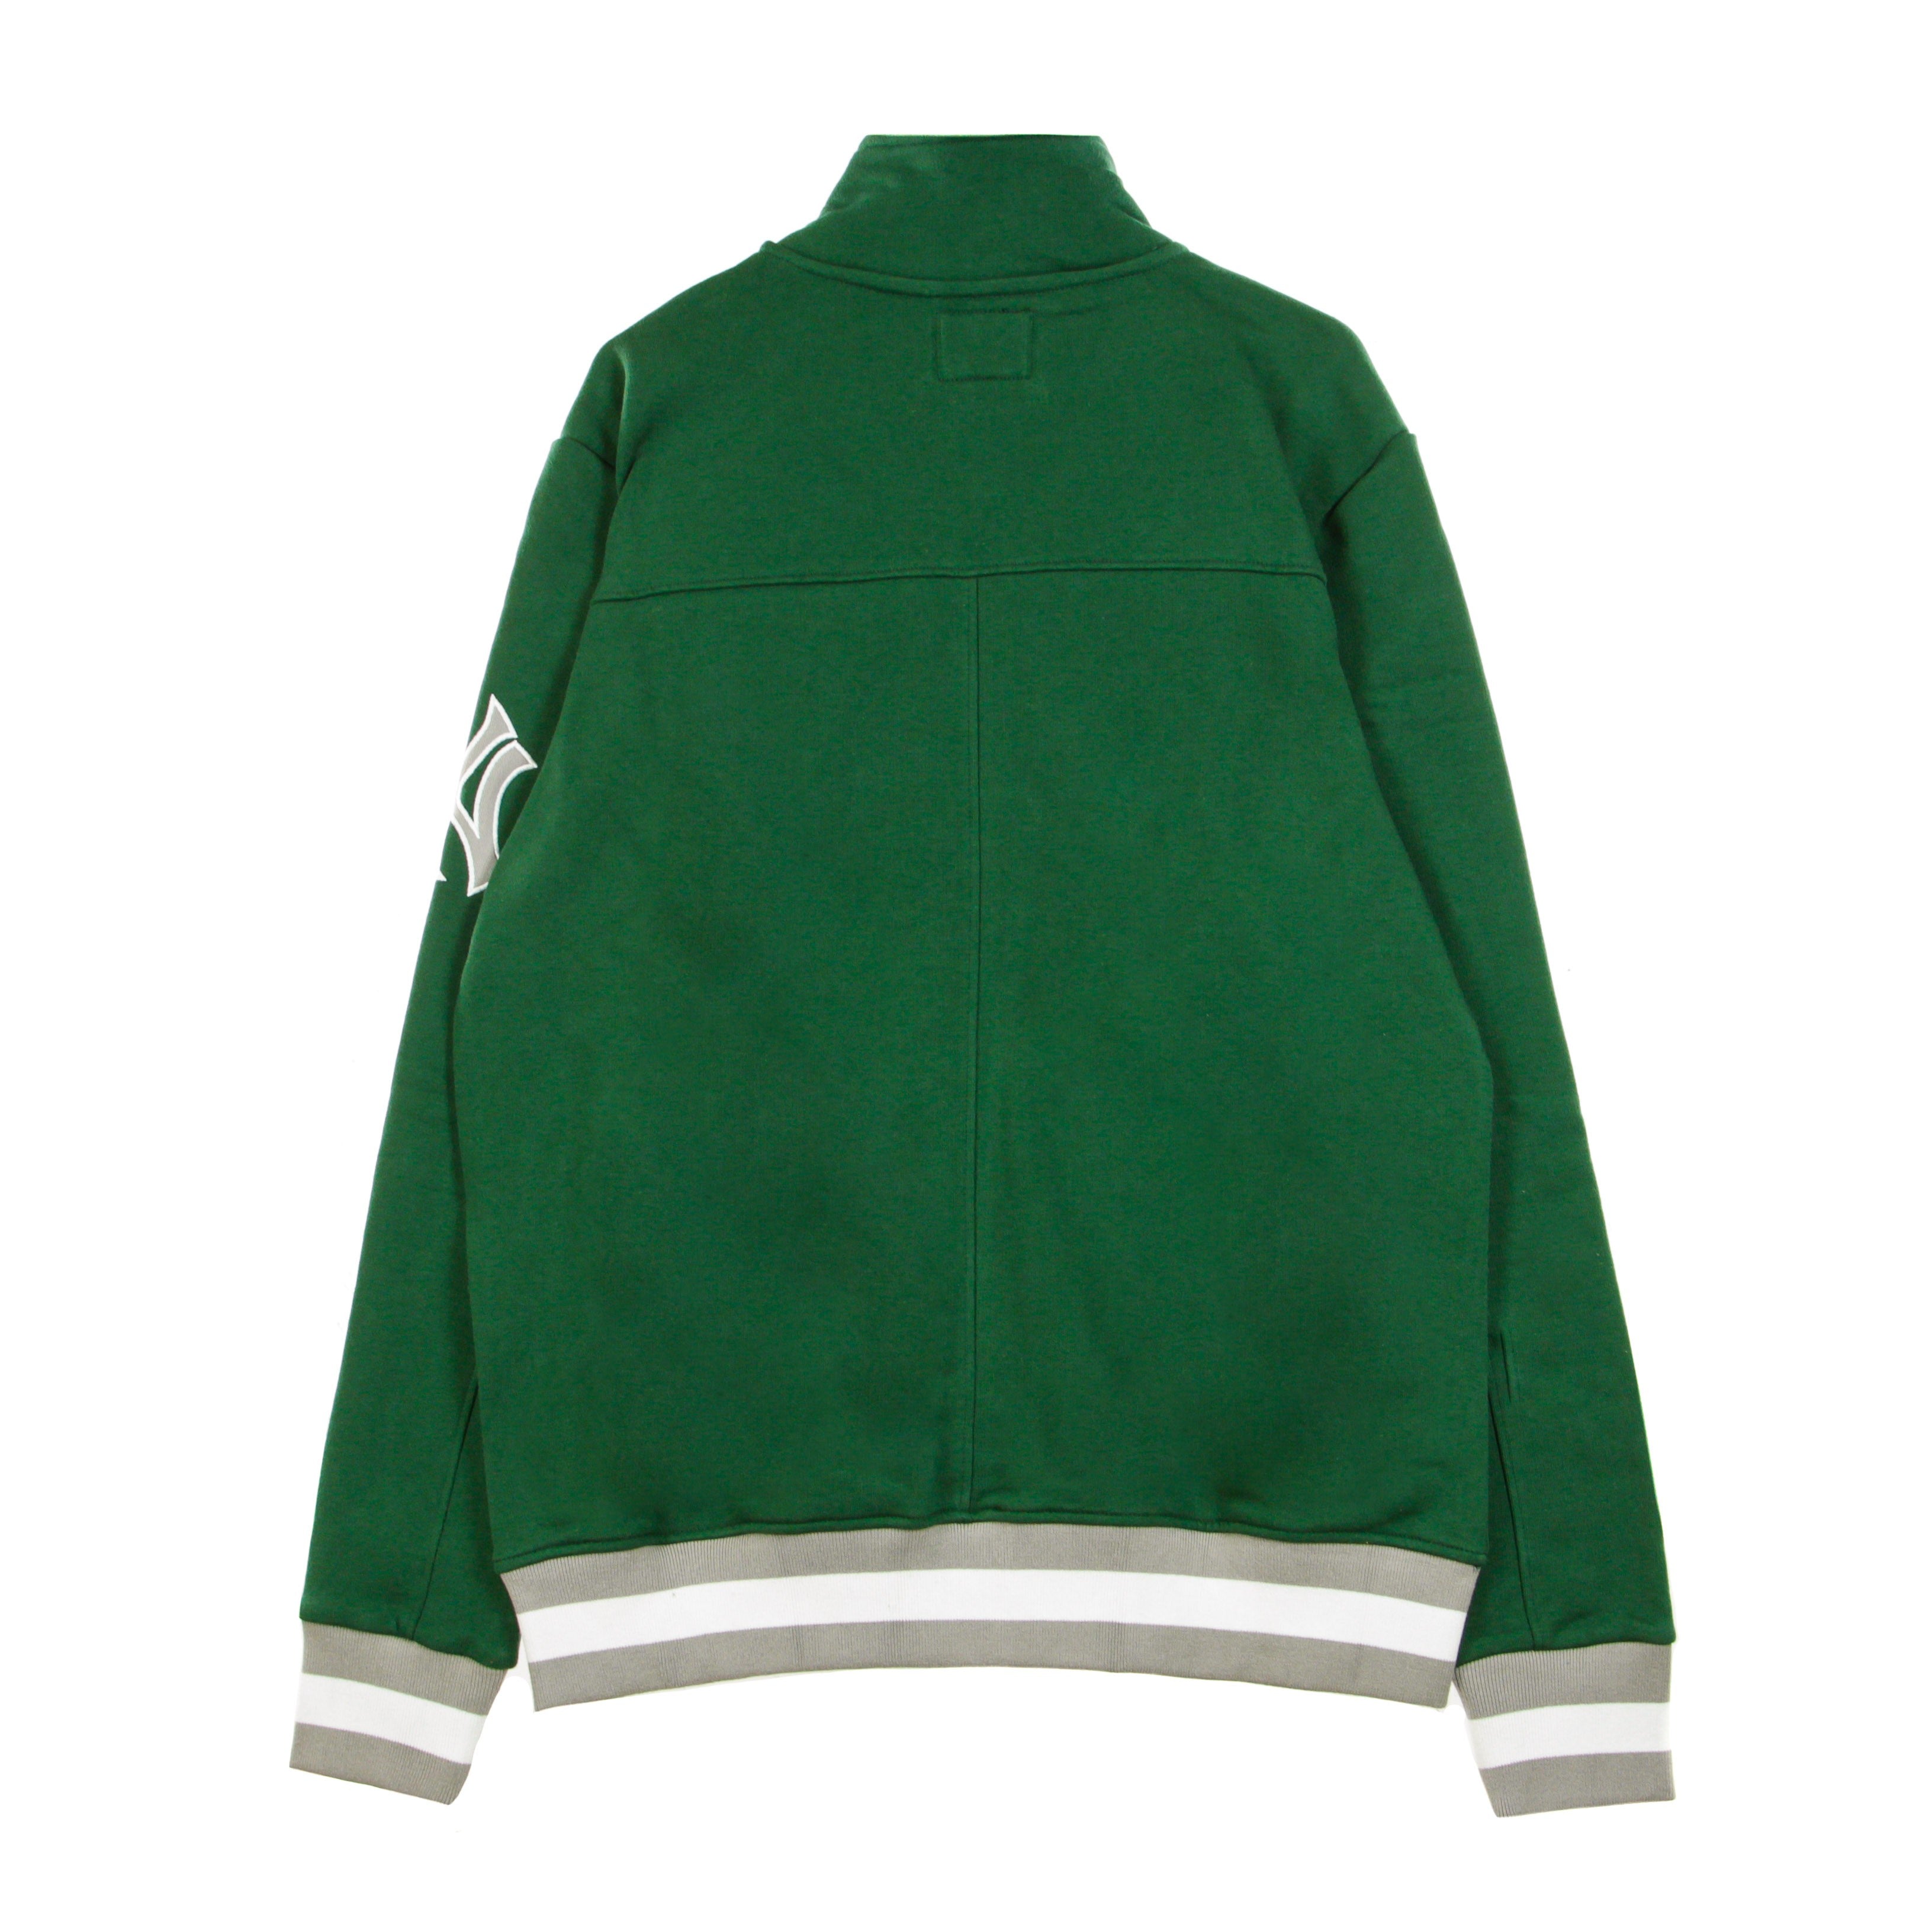 47 Brand, Giacca Tuta Uomo Mlb Legendary Track Jacket Neyyan, Dark Green/white